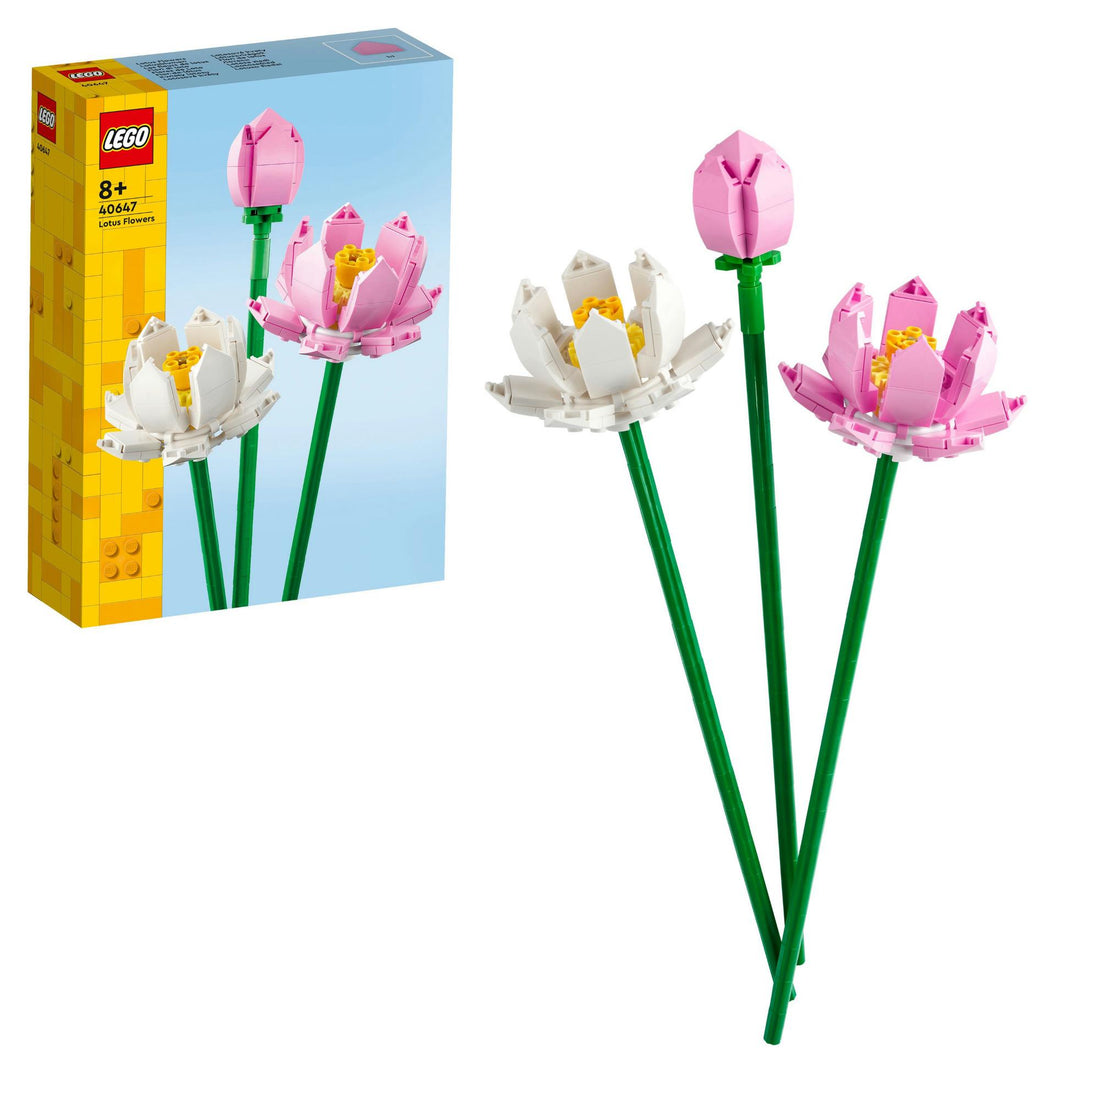 LEL Flowers - Lotus flowers